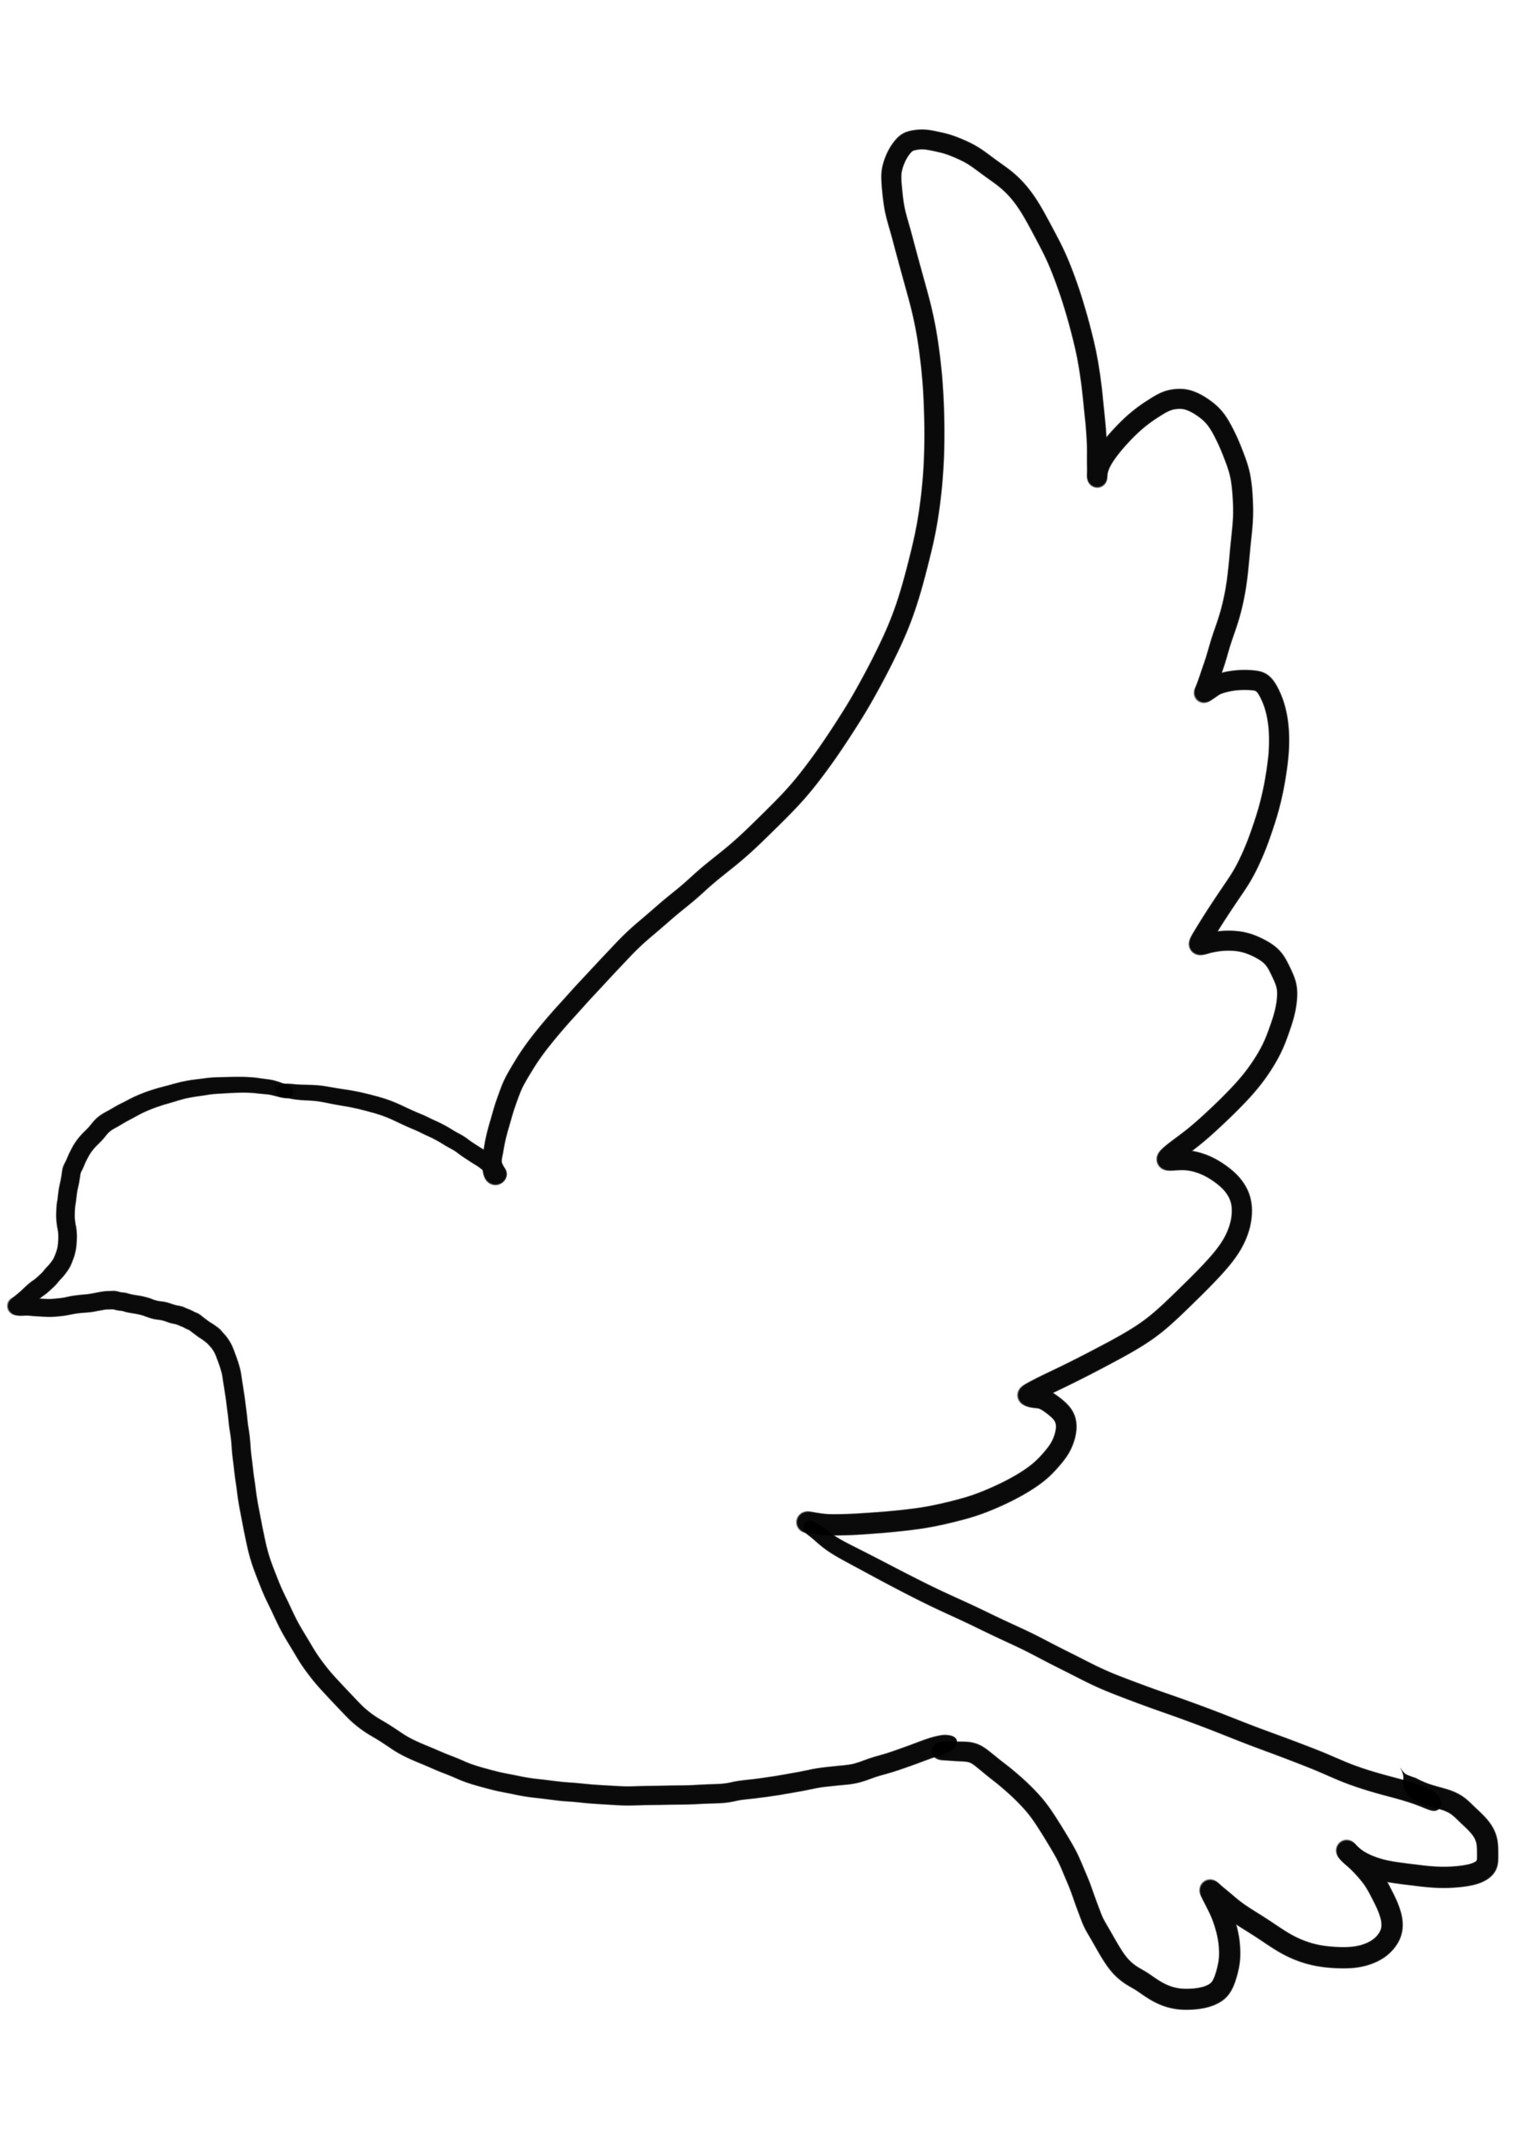 Página para colorear de silueta de paloma